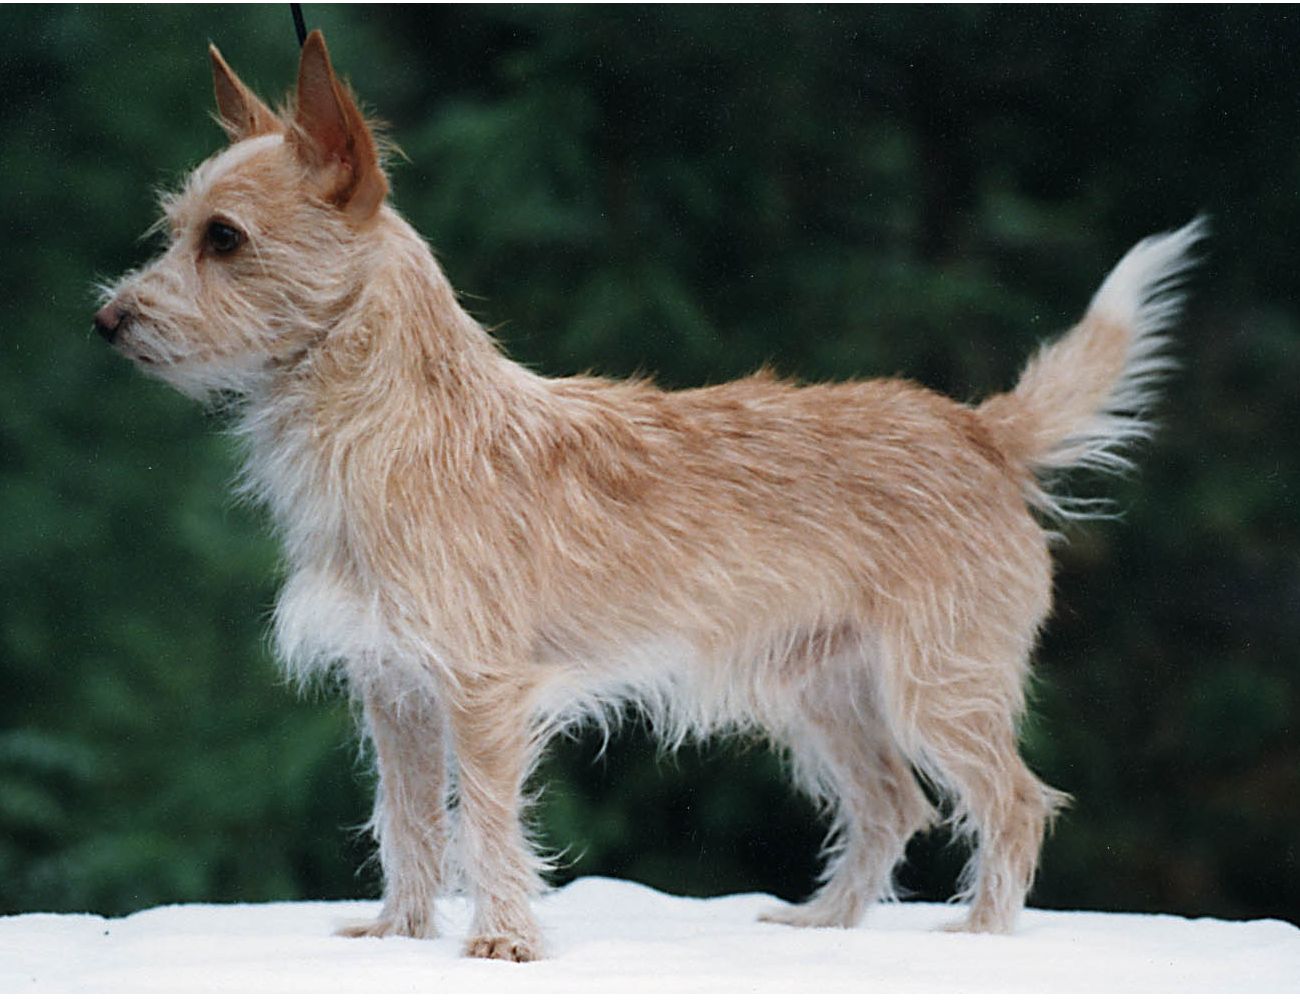 Португальский поденгу (кроличья собака): описание породы с фото и видео